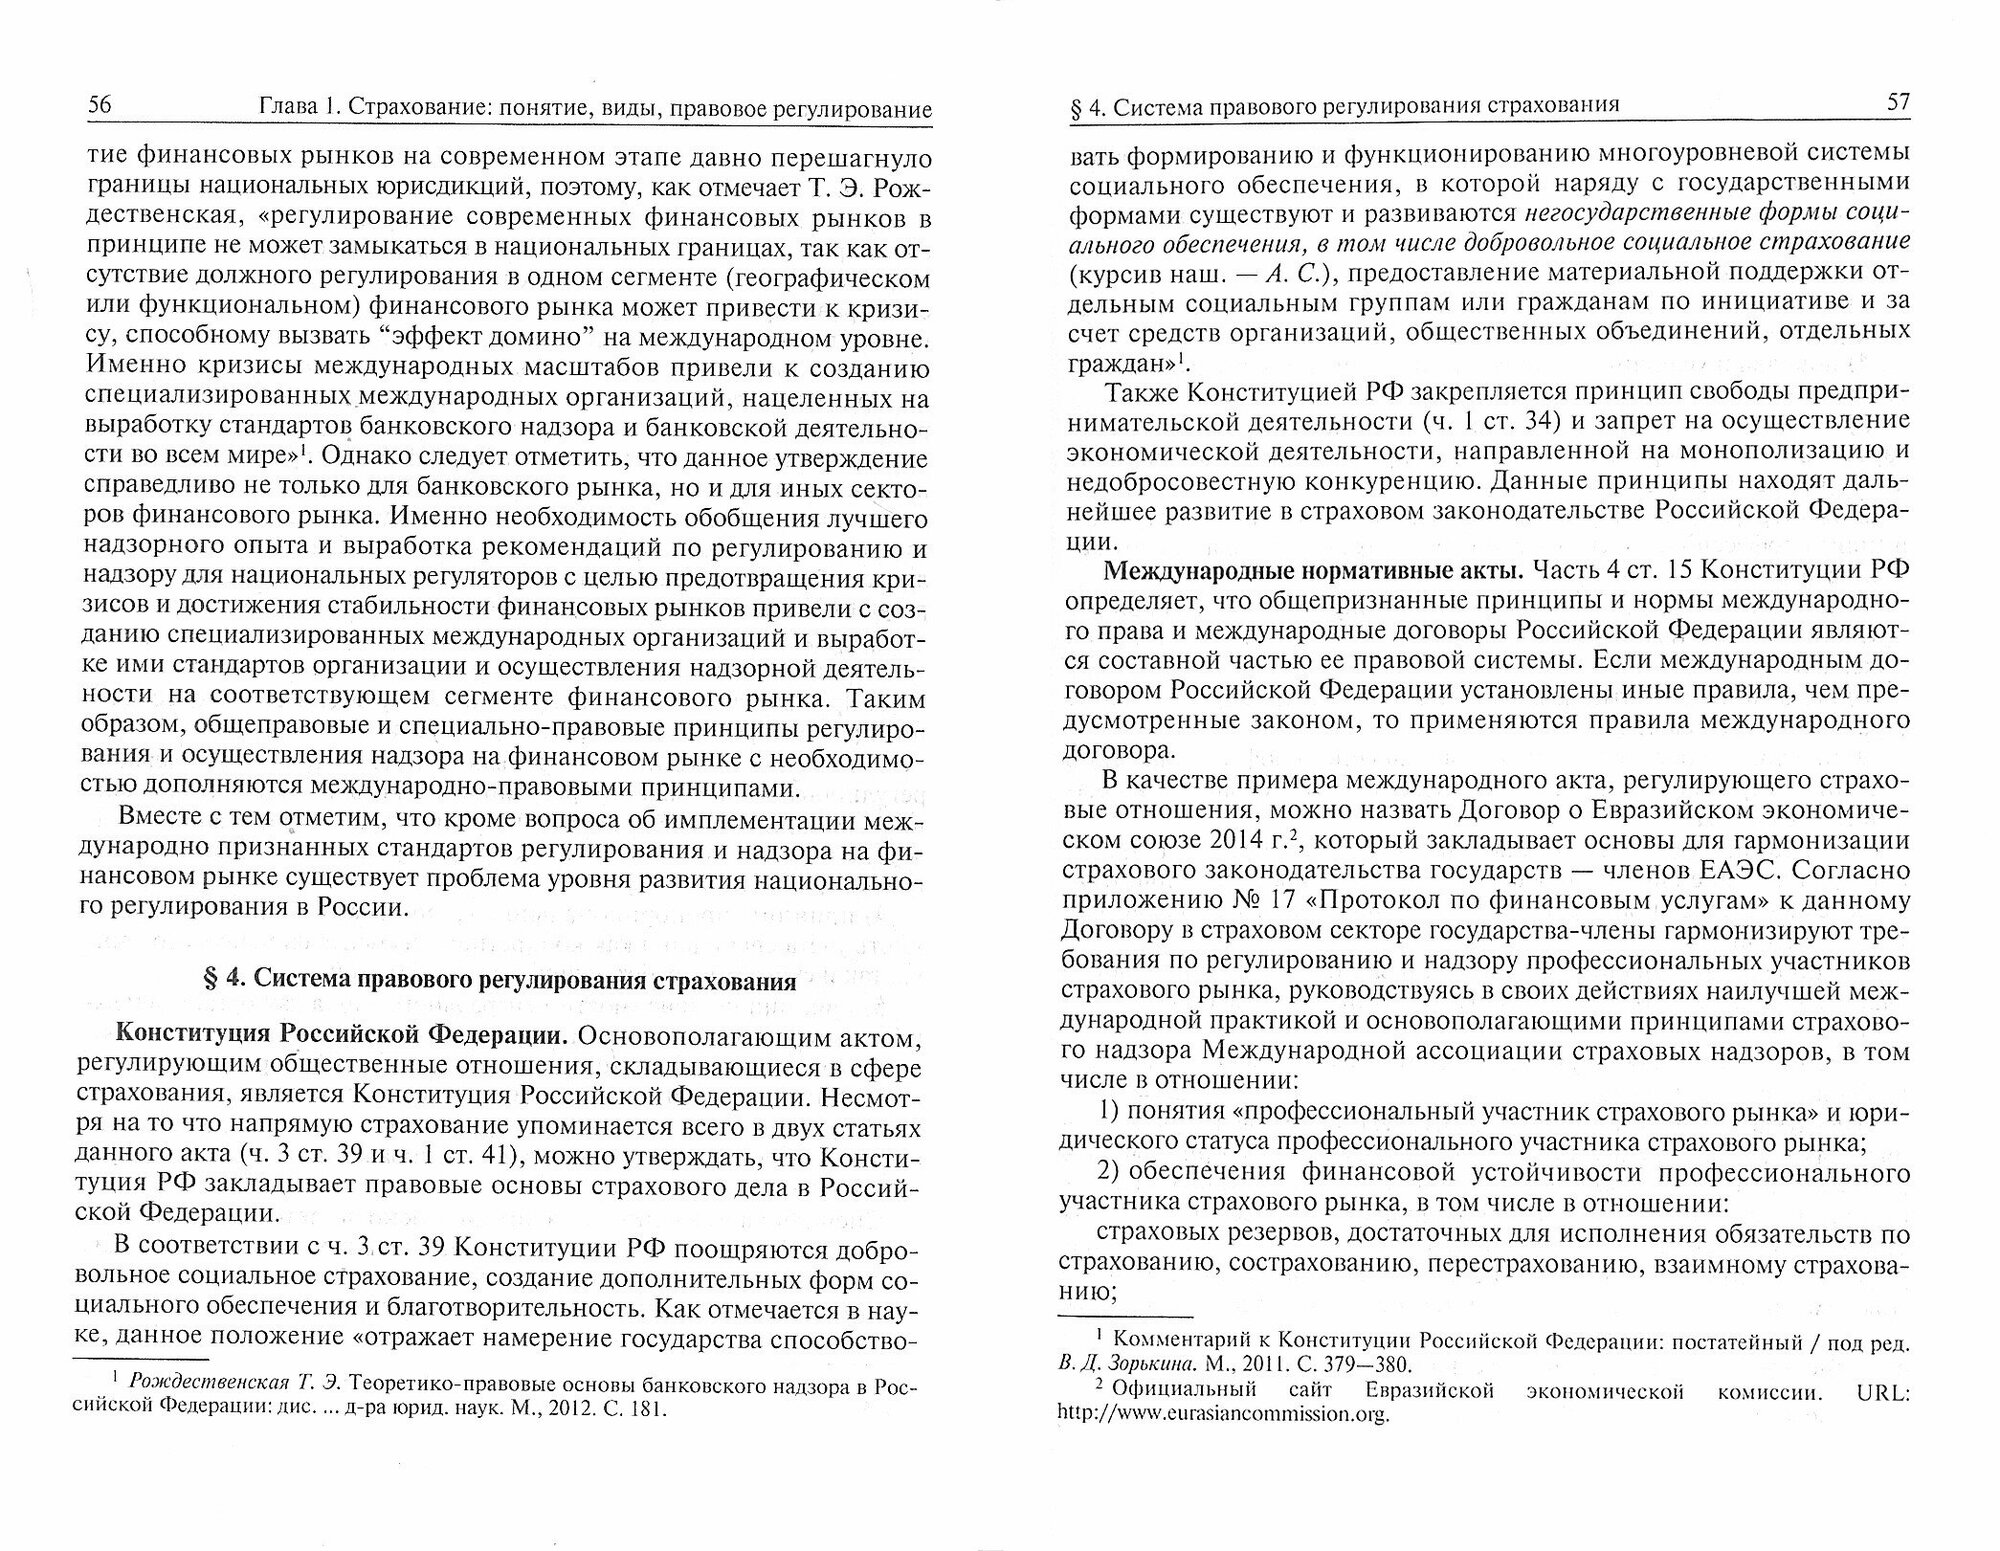 Страховой надзор в РФ. Учебное пособие - фото №2